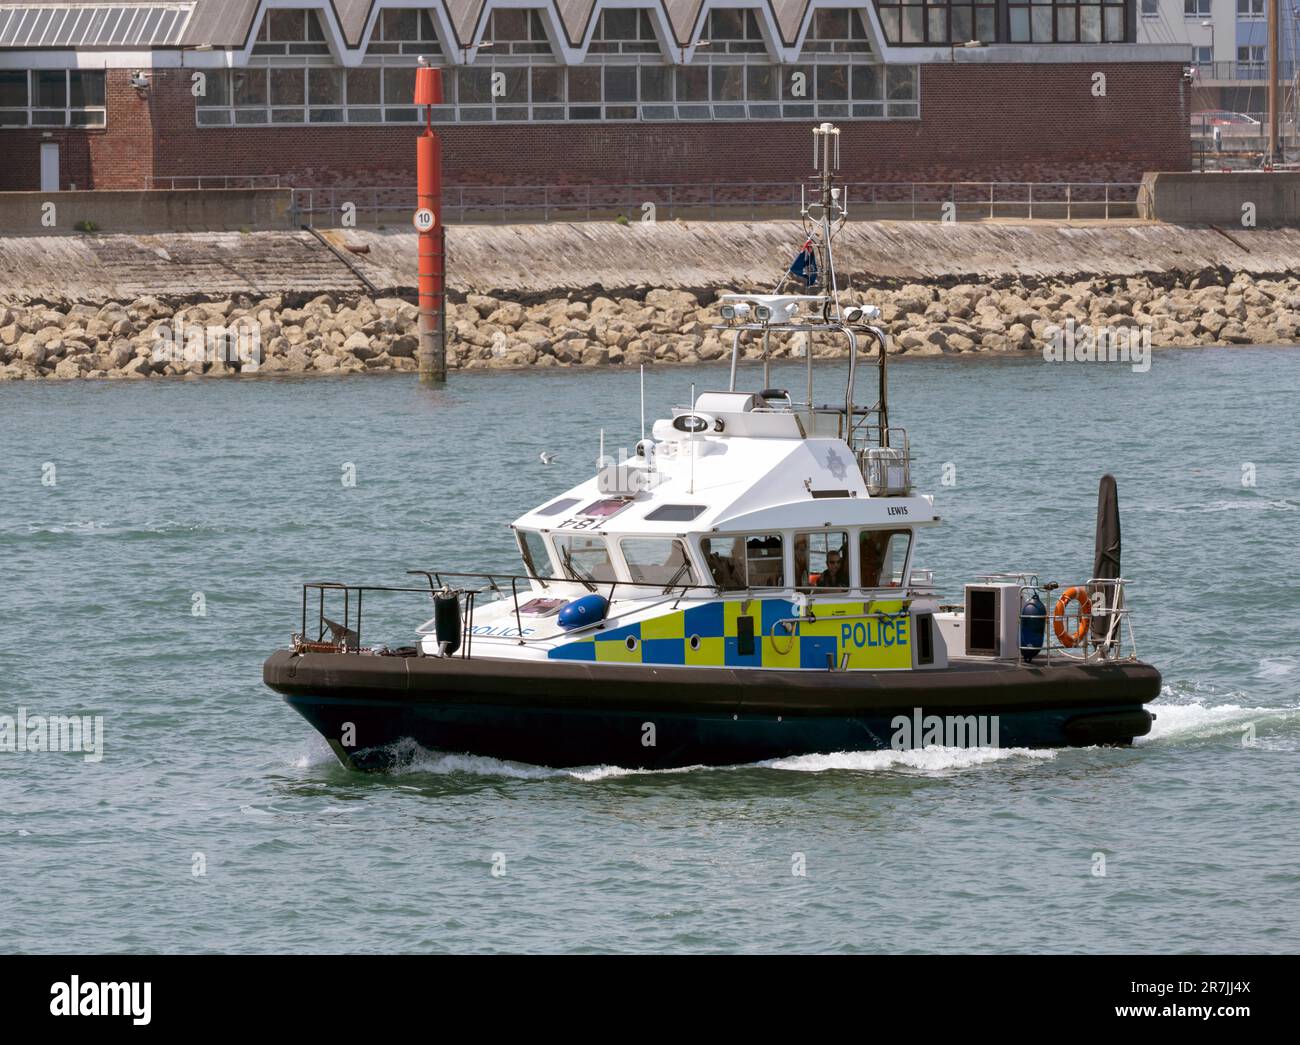 Lancio della polizia Lewis - un lancio di classe isolana della polizia mod all'ingresso del porto di Portsmouth, Portsmouth, Hampshire, Inghilterra, Regno Unito Foto Stock